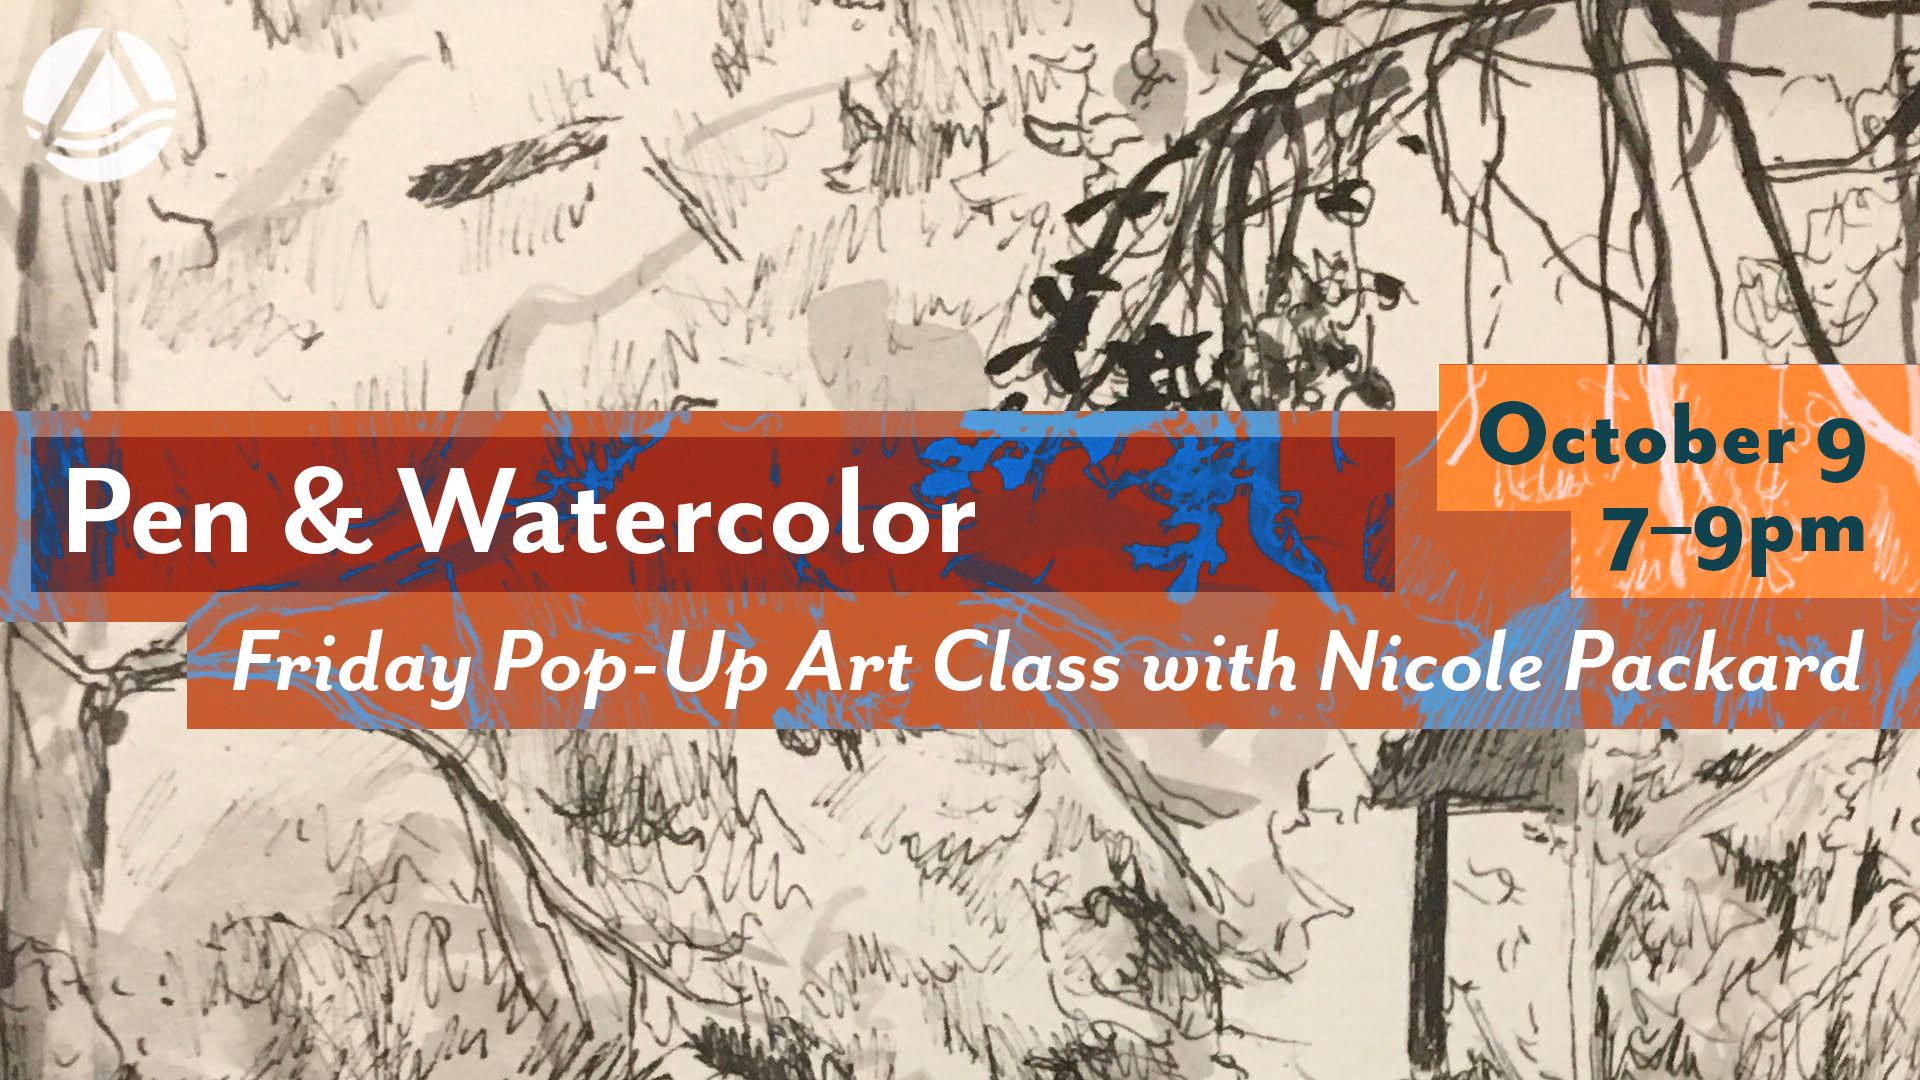 Pen & watercolor - Pop-Up Art Class Online via Zoom August 17, 2020